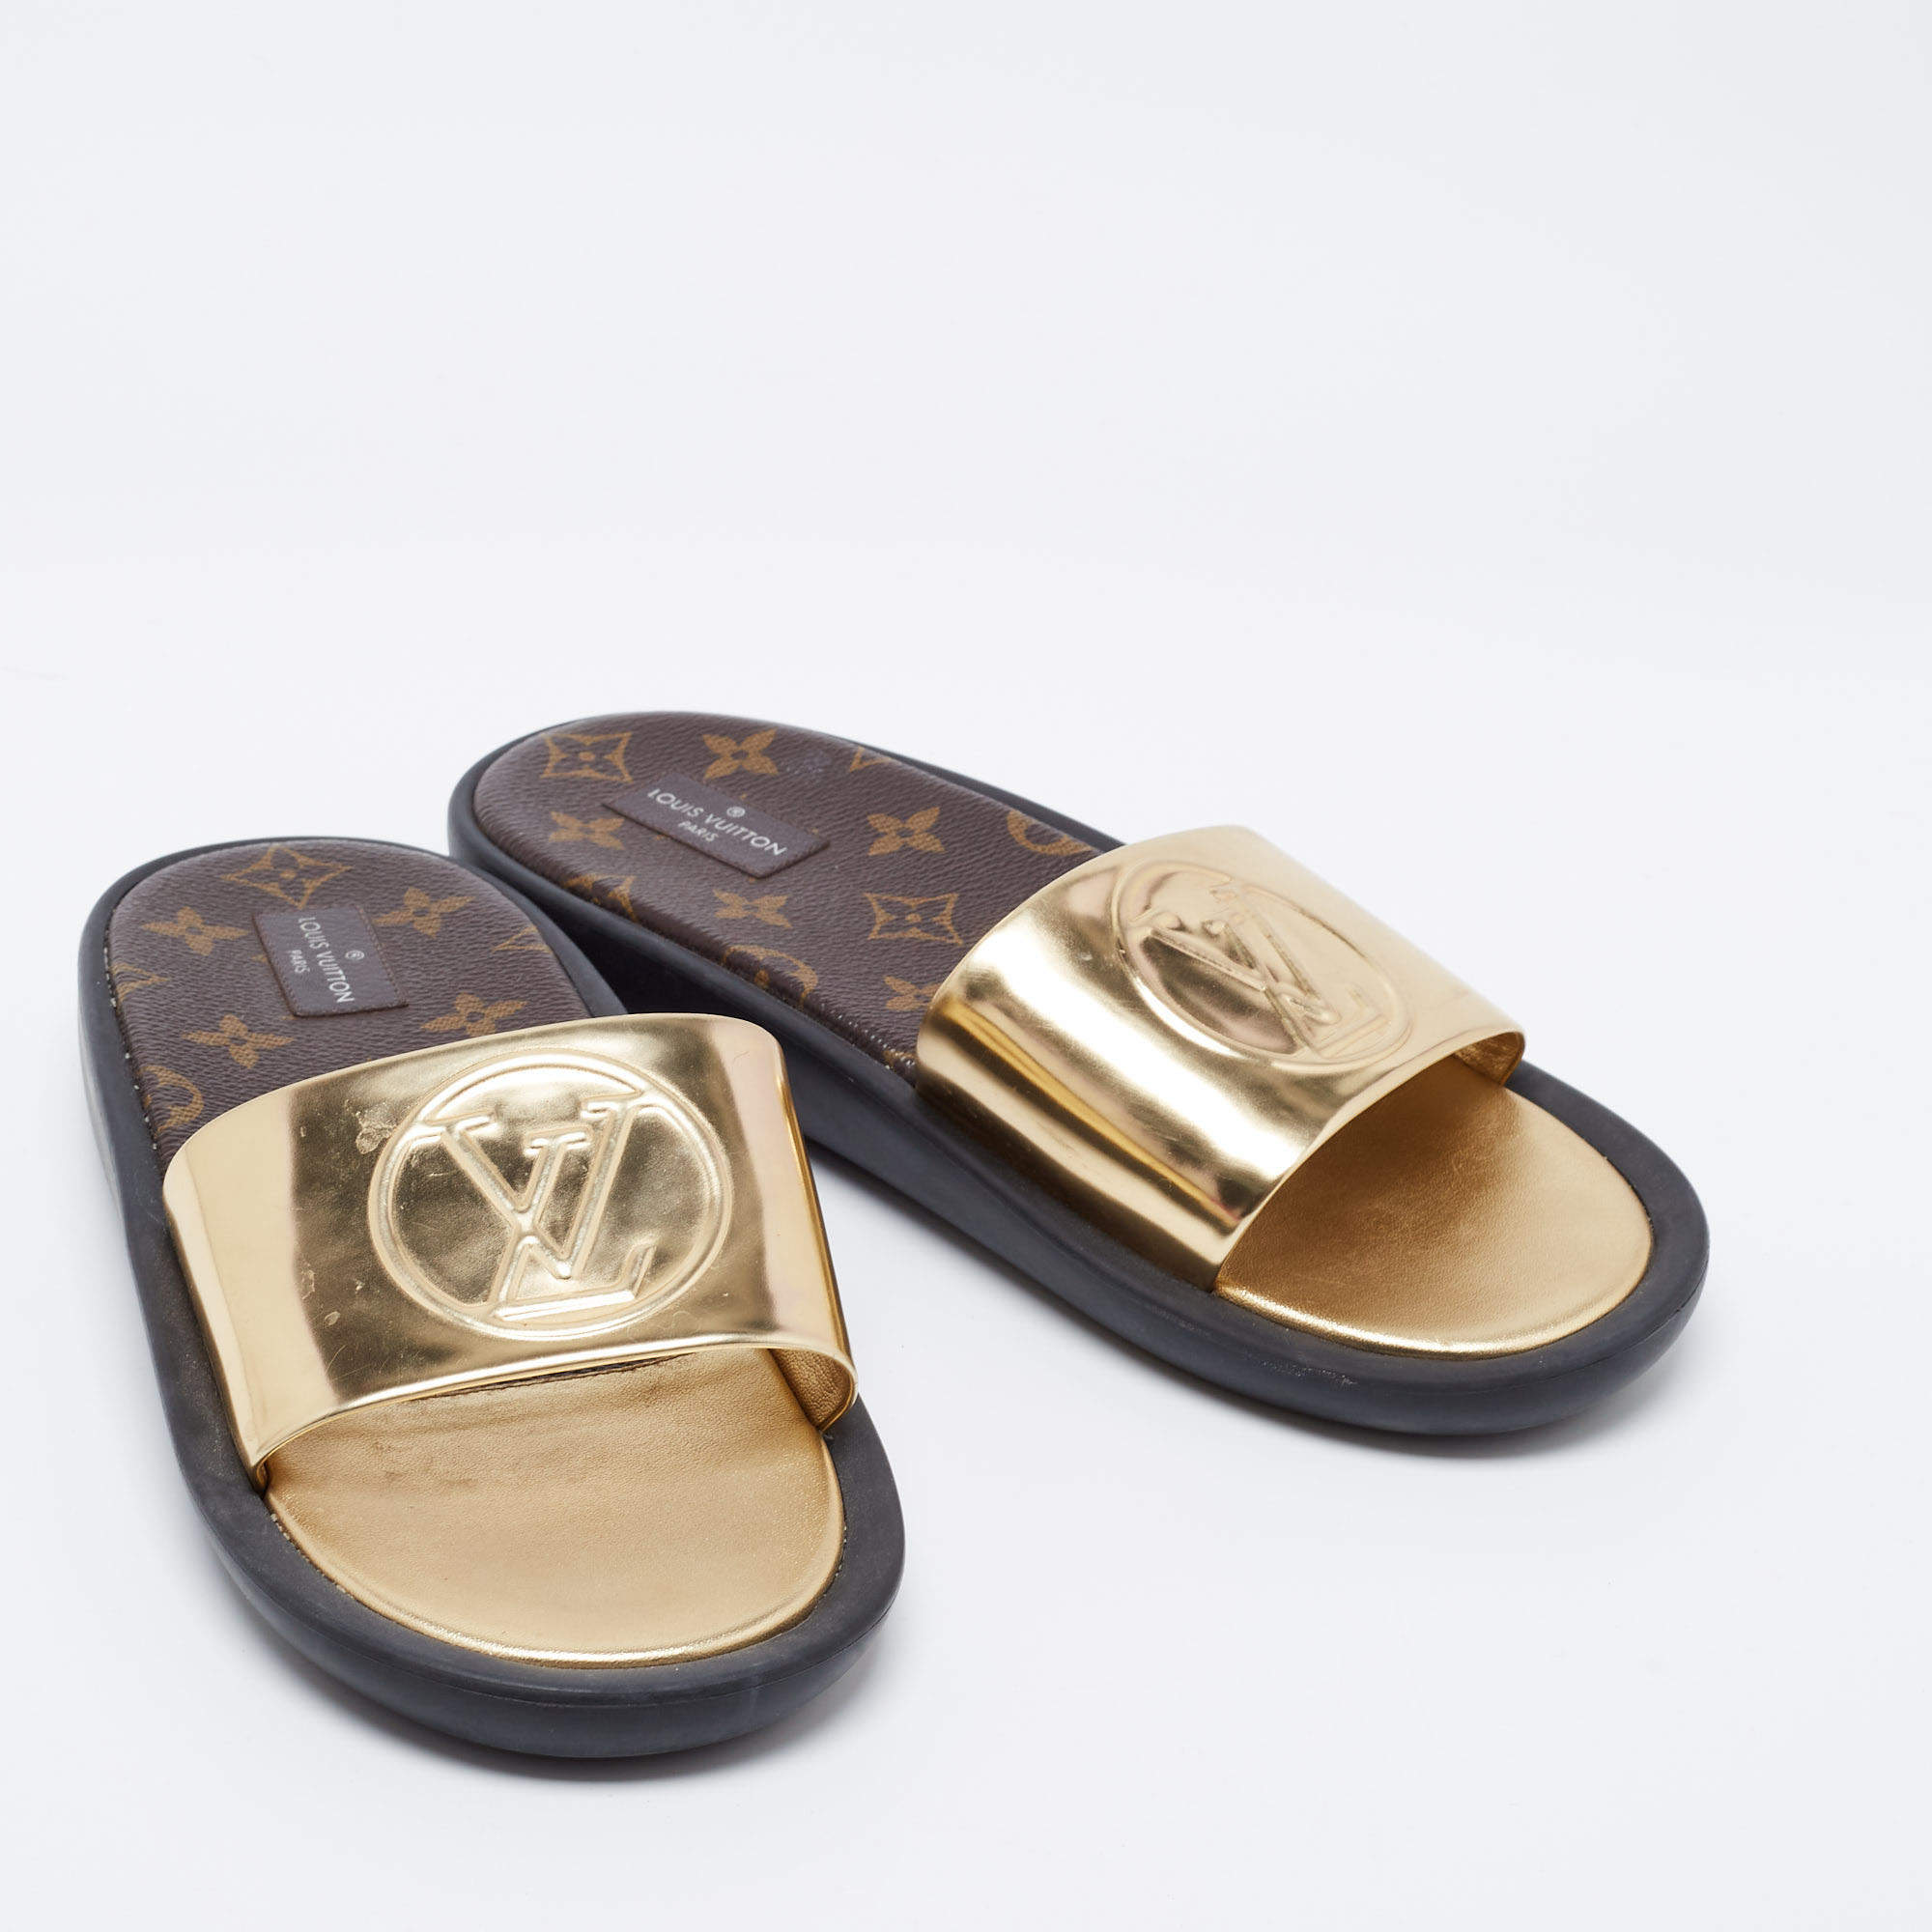 Louis Vuitton Gold Leather Sunbath Flat Slides Size 39 Louis Vuitton